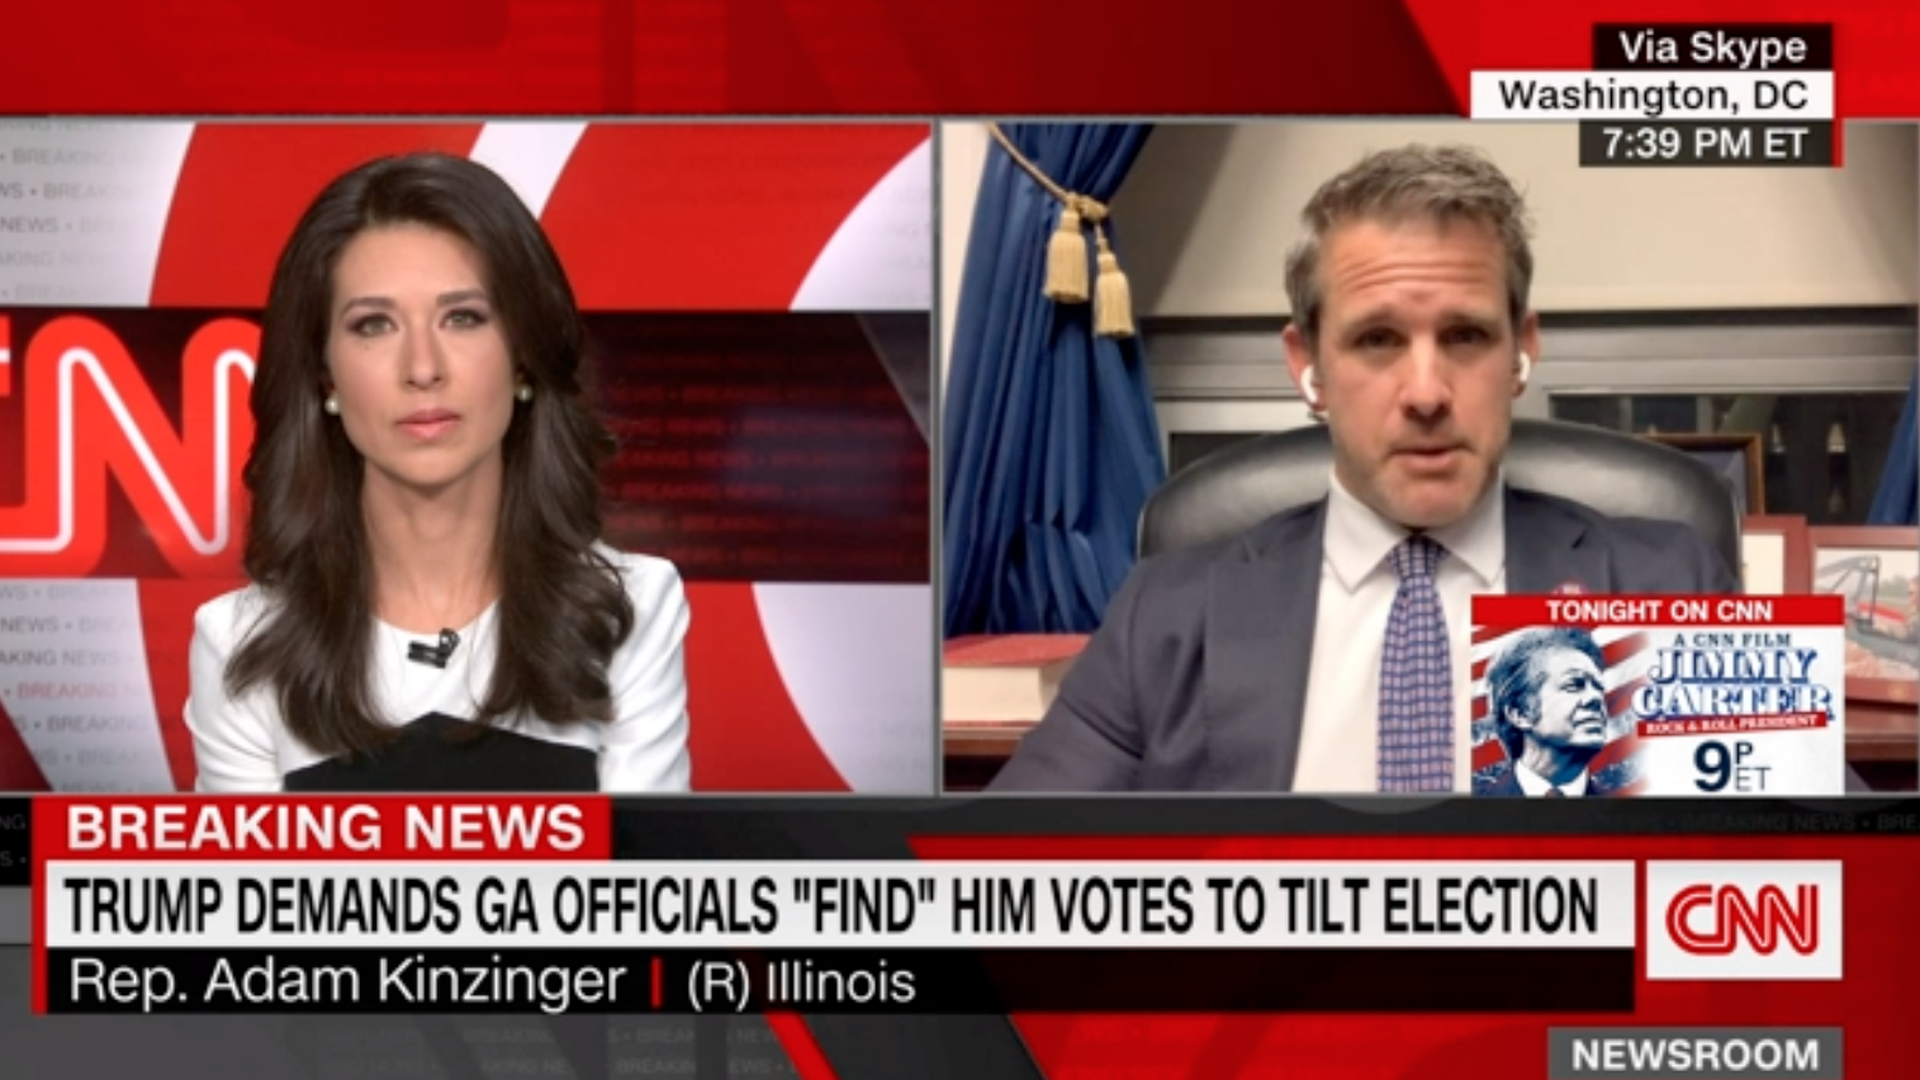 A screenshot of Rep. Adam Kinzinger on CNN.